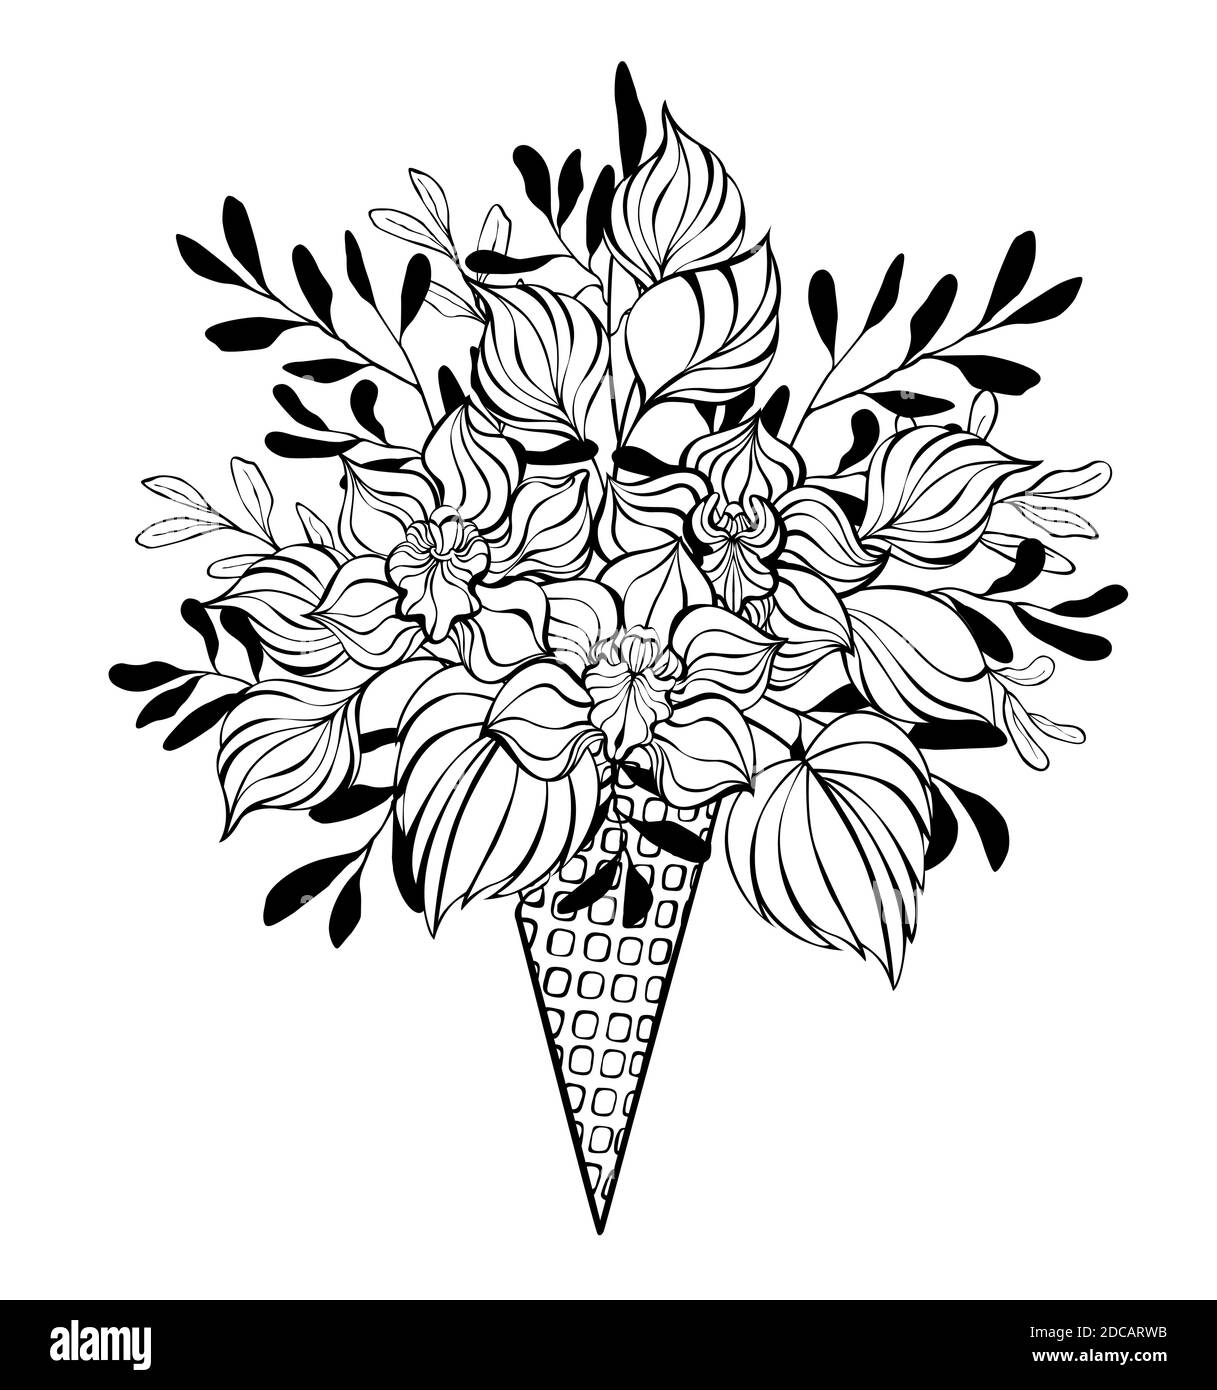 Kontur Waffelkegel mit Bouquet von künstlerischen, Kontur Orchideen und dekorative Pflanzen in schwarz umrandet auf weißem Hintergrund gezeichnet. Farbgebung. Stock Vektor